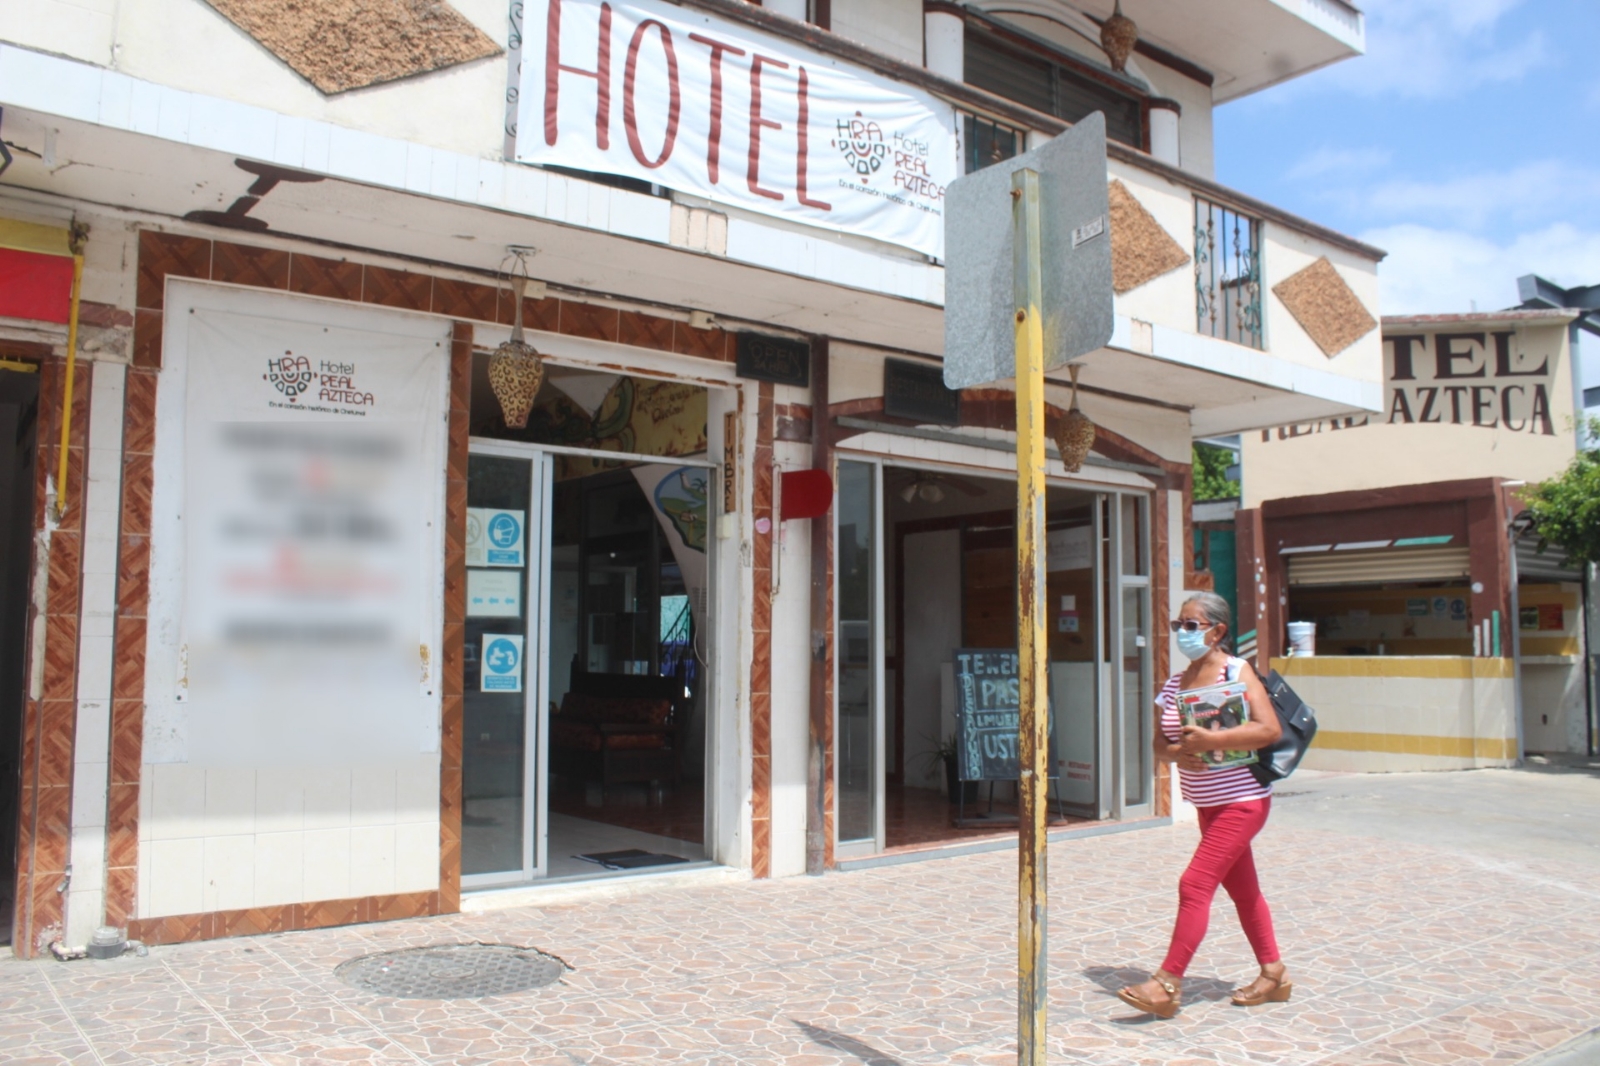 Hoteleros de Bacalar se quejan por agresiva recaudación de impuestos de Carlos Joaquín